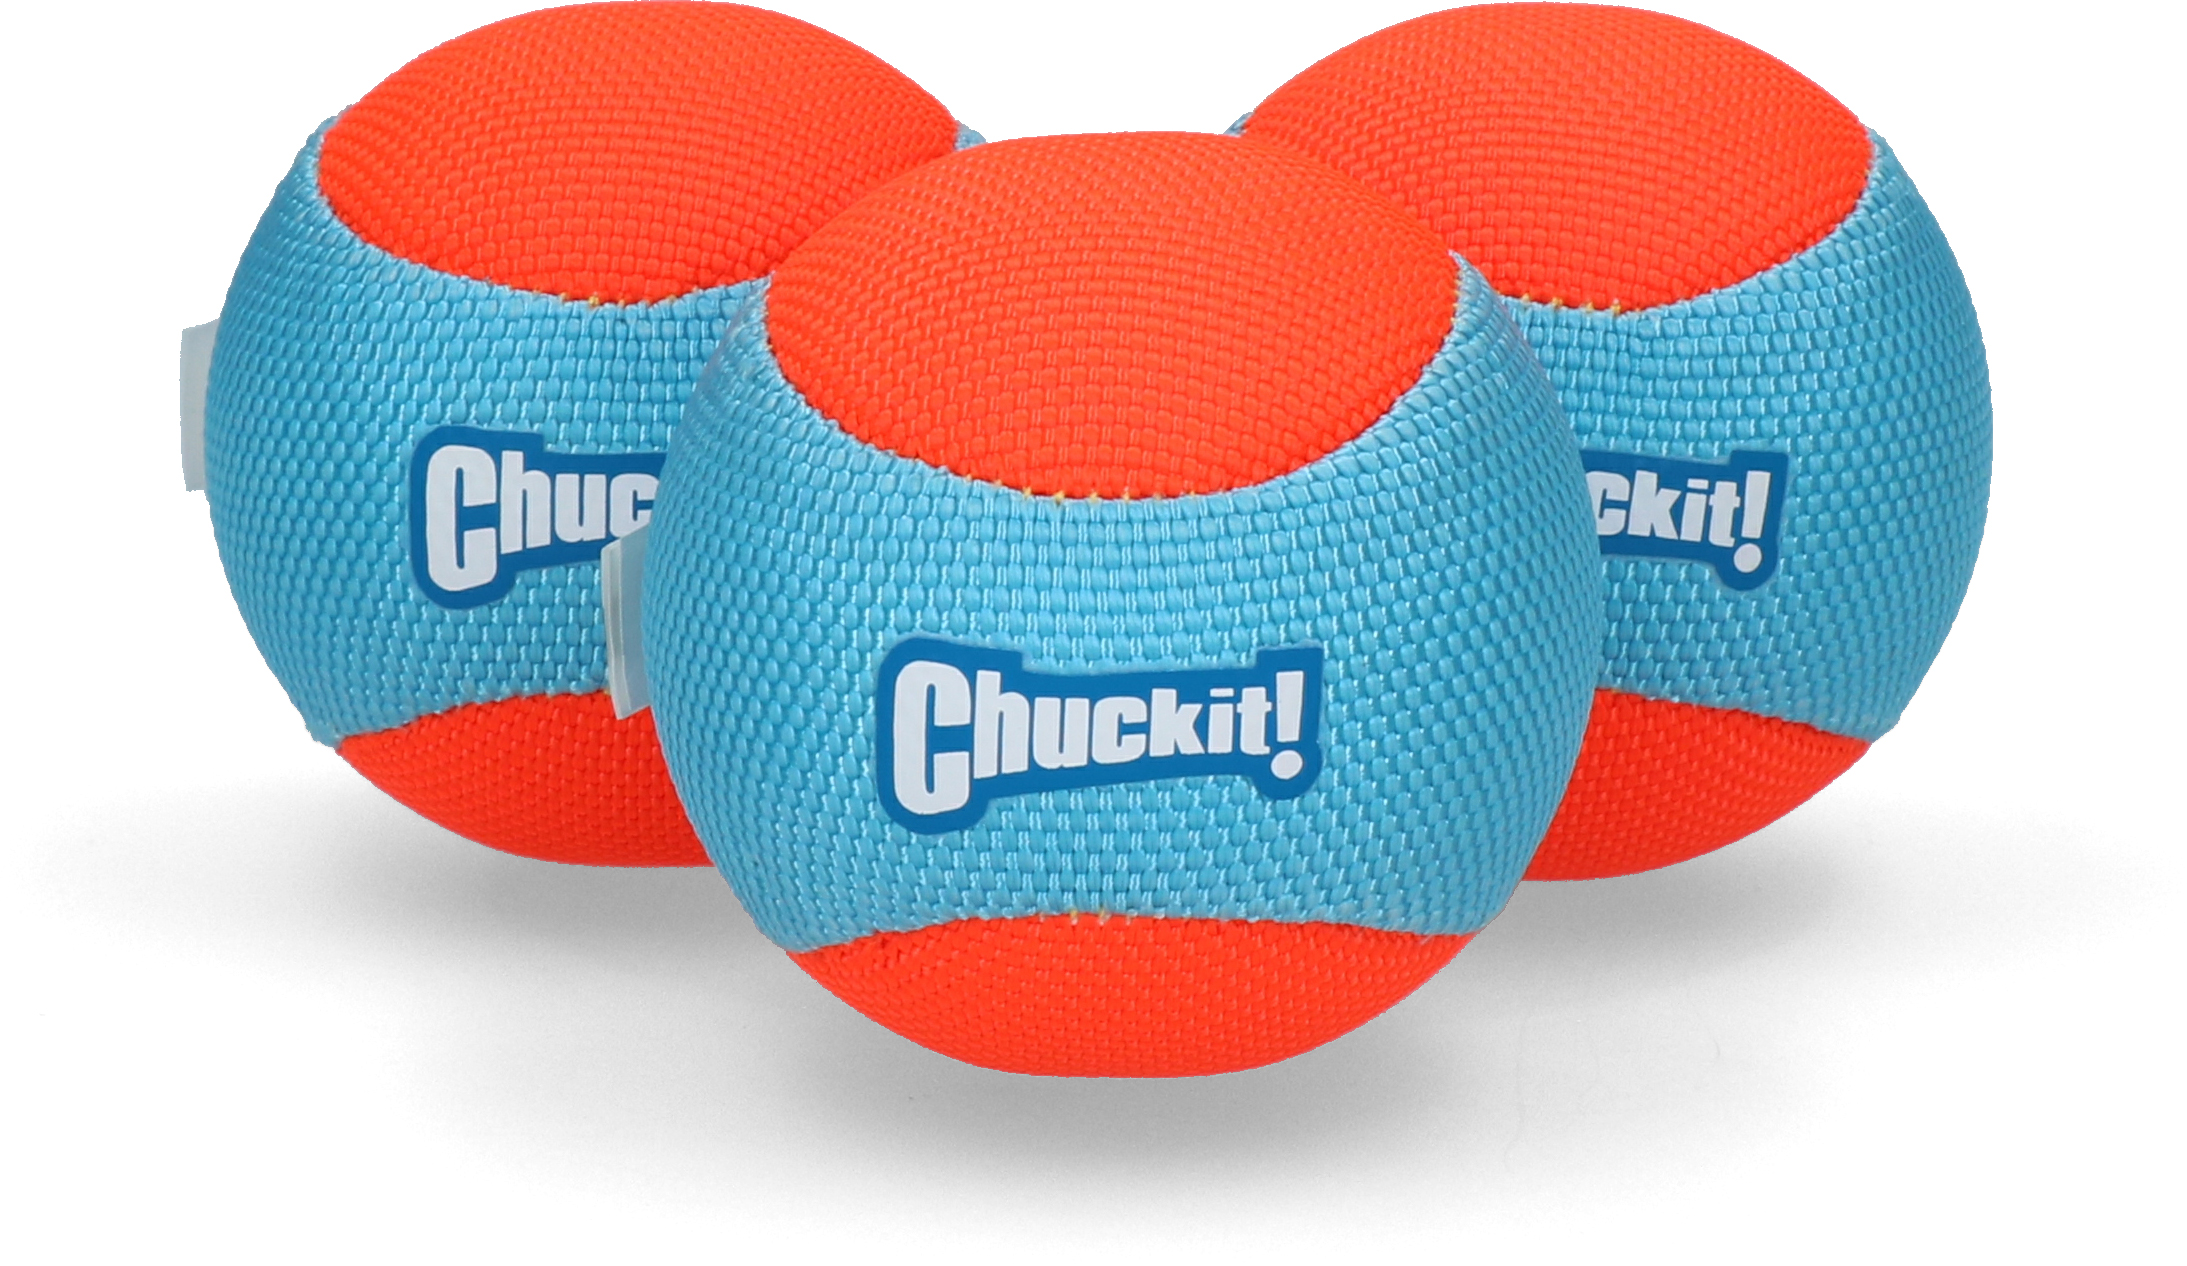 Chuckit Amphibious Balls 3er Pack